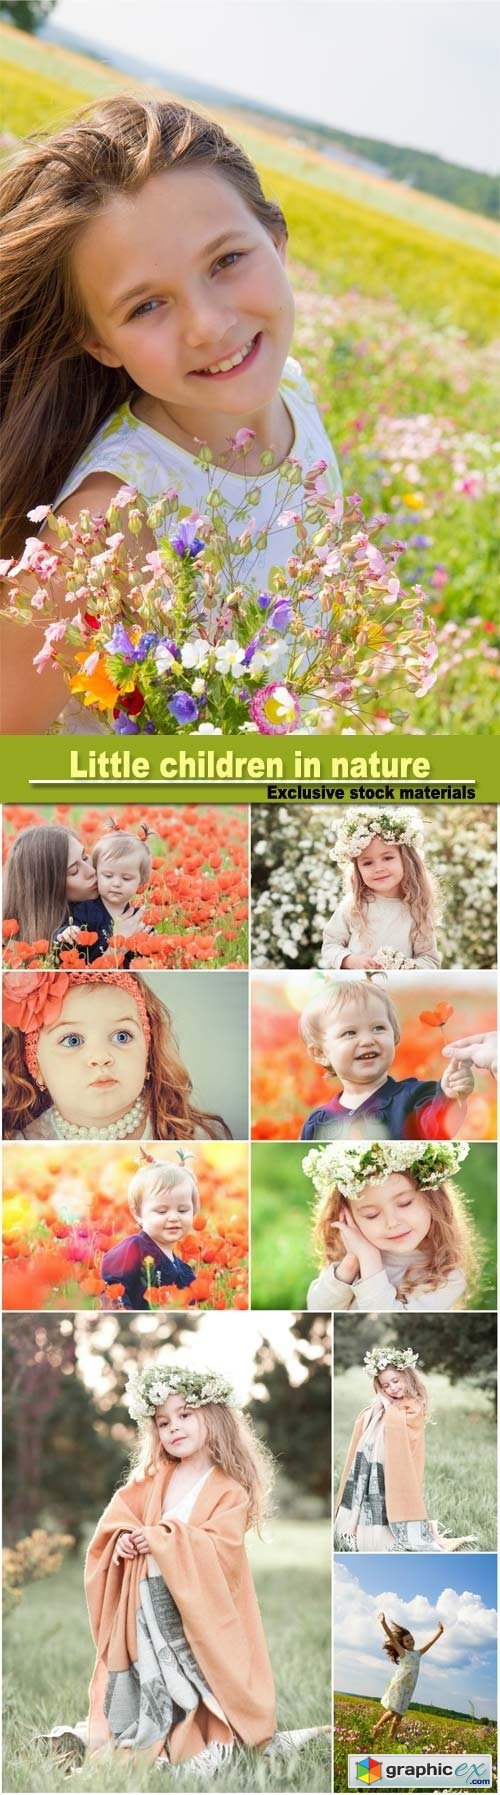 Little children in nature, family